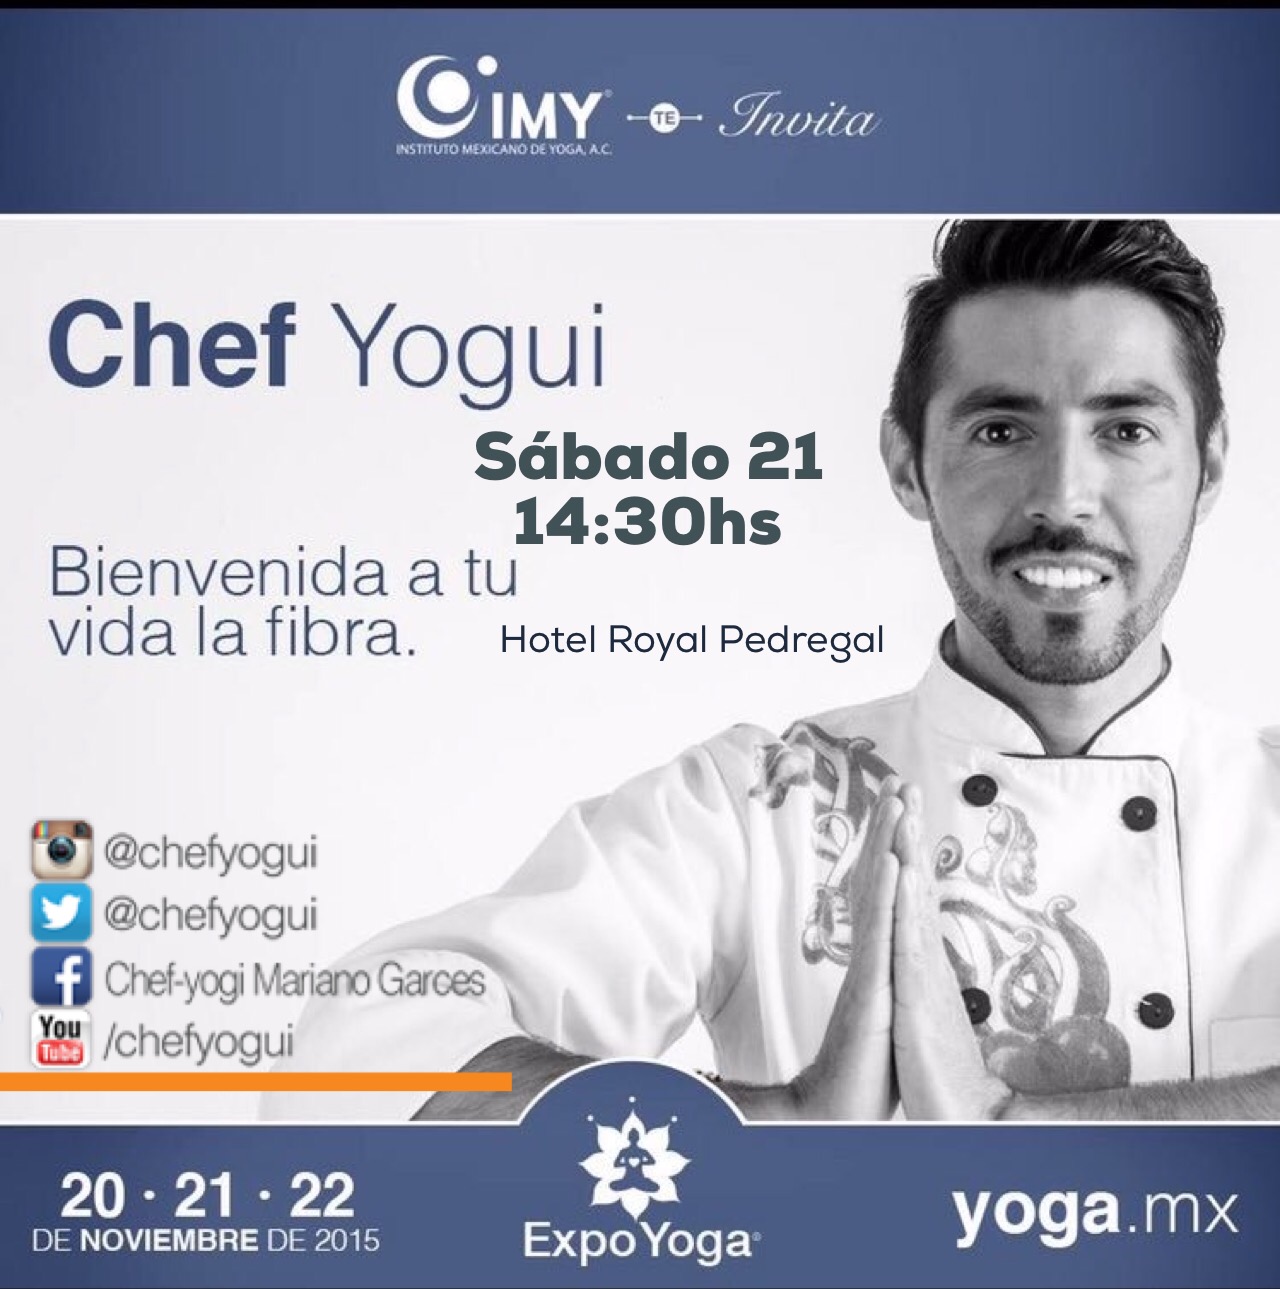 Chef Yogui